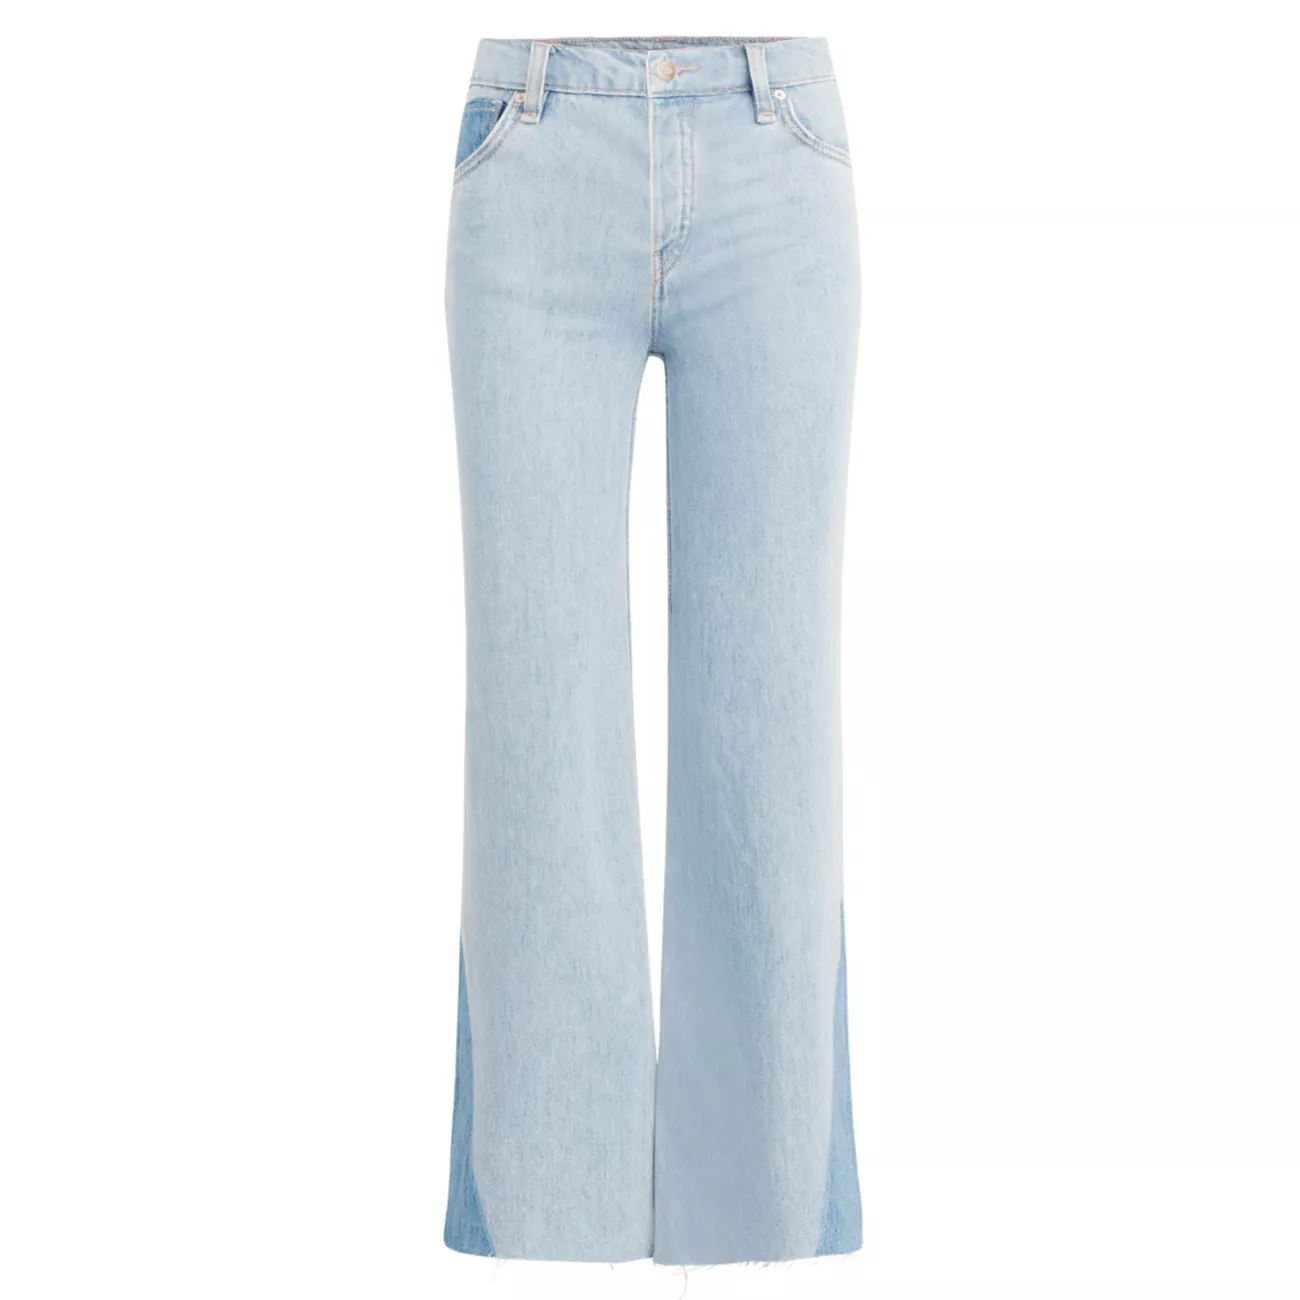 Укороченные джинсы широкого кроя с высокой посадкой Rose Hudson Jeans